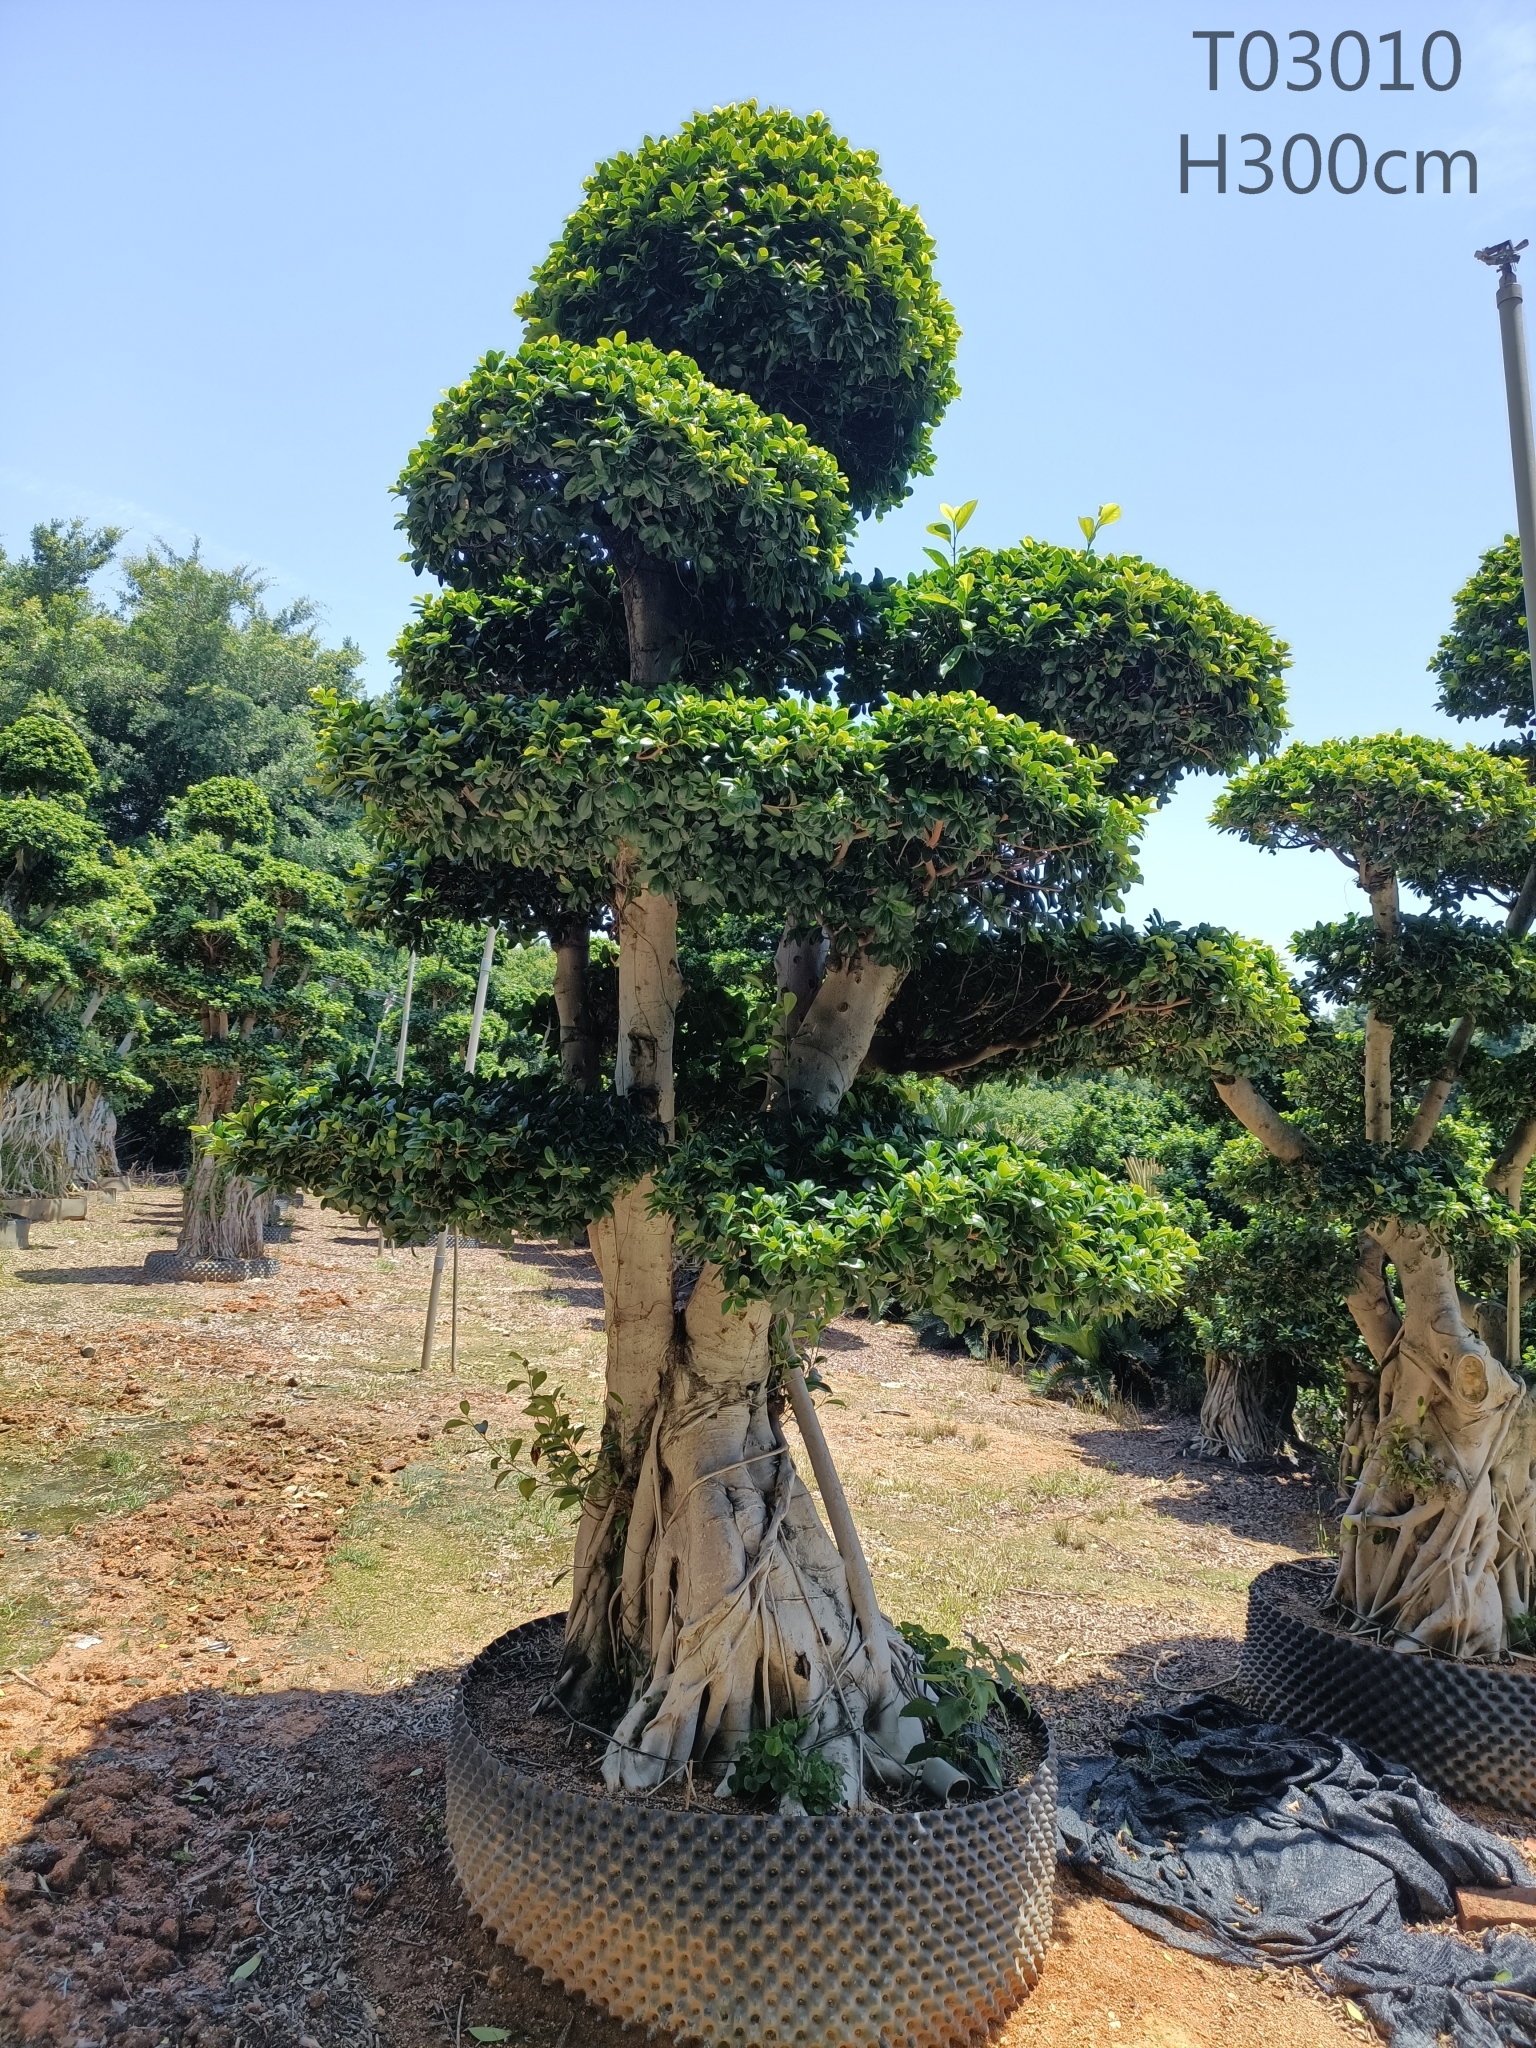 Tuam Tshoj Loj Loj Fiucs Microcarpa Sab Nraum Nroj Tsuag Ficus Stump Ficus Bonsai